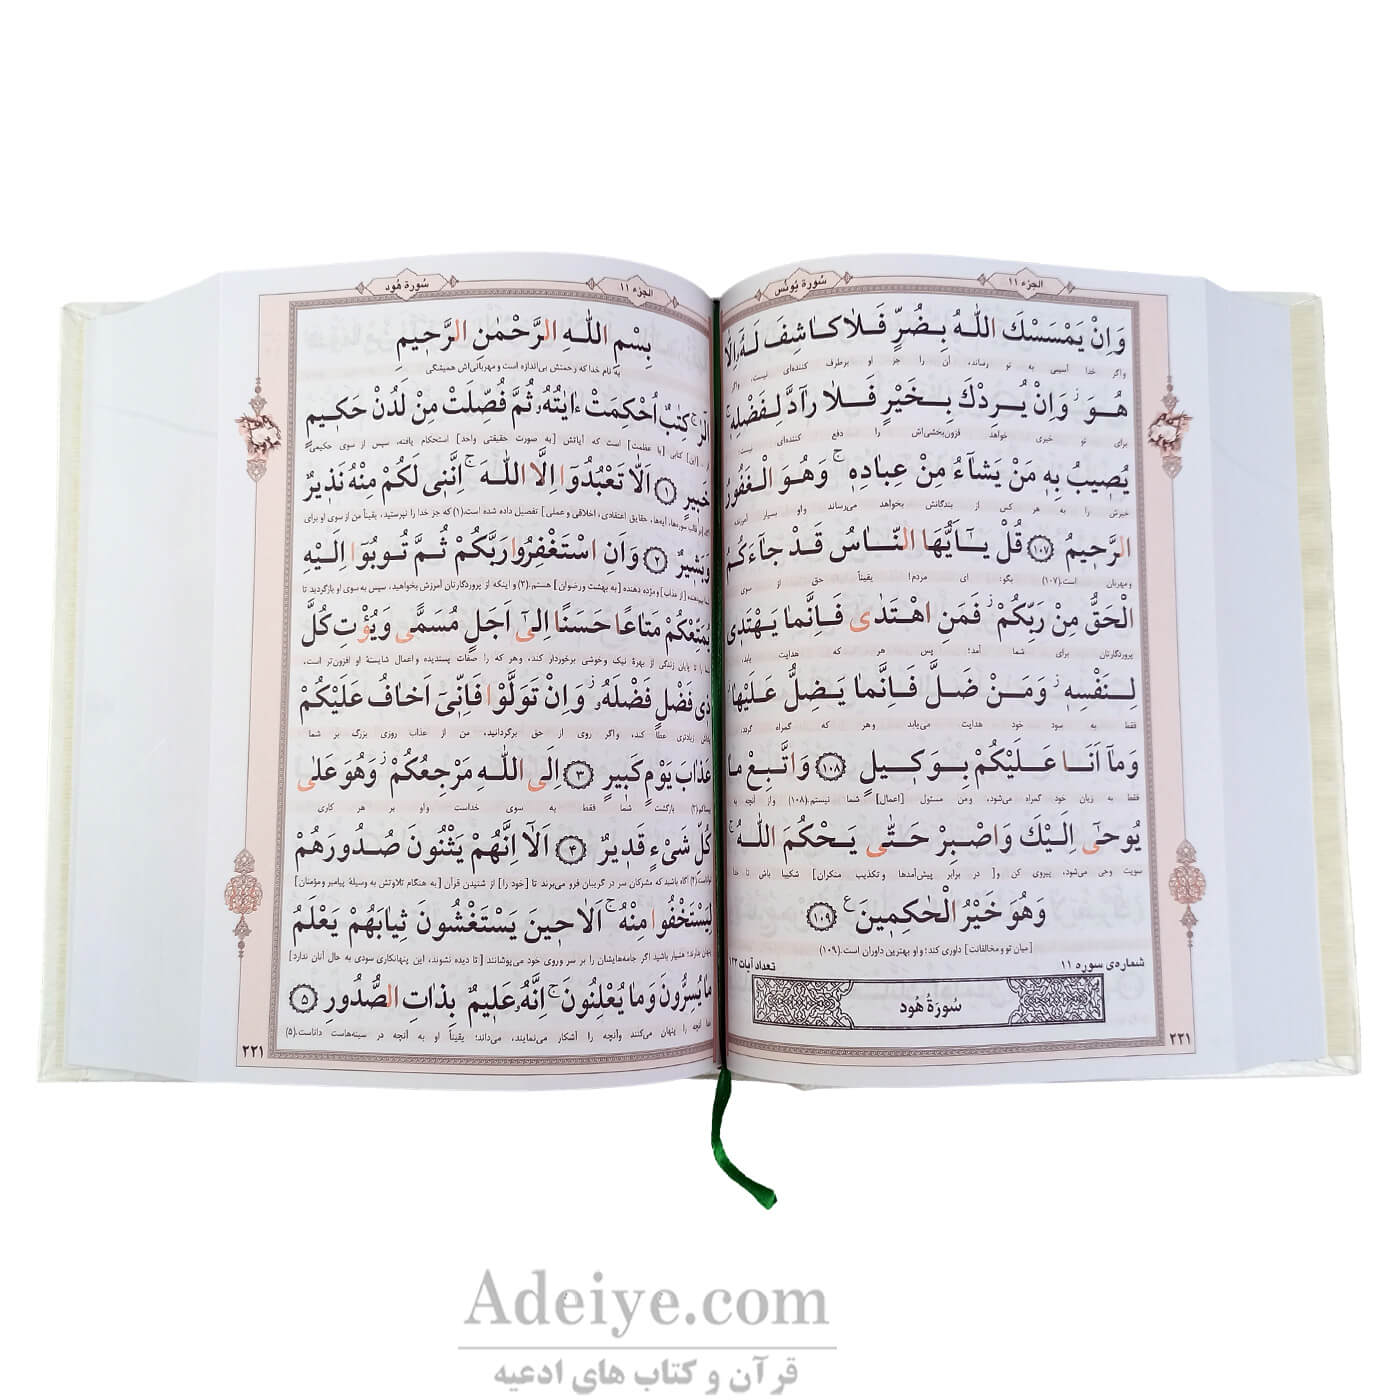 قرآن وزیری با جلد سلفون و خط کامپیوتری